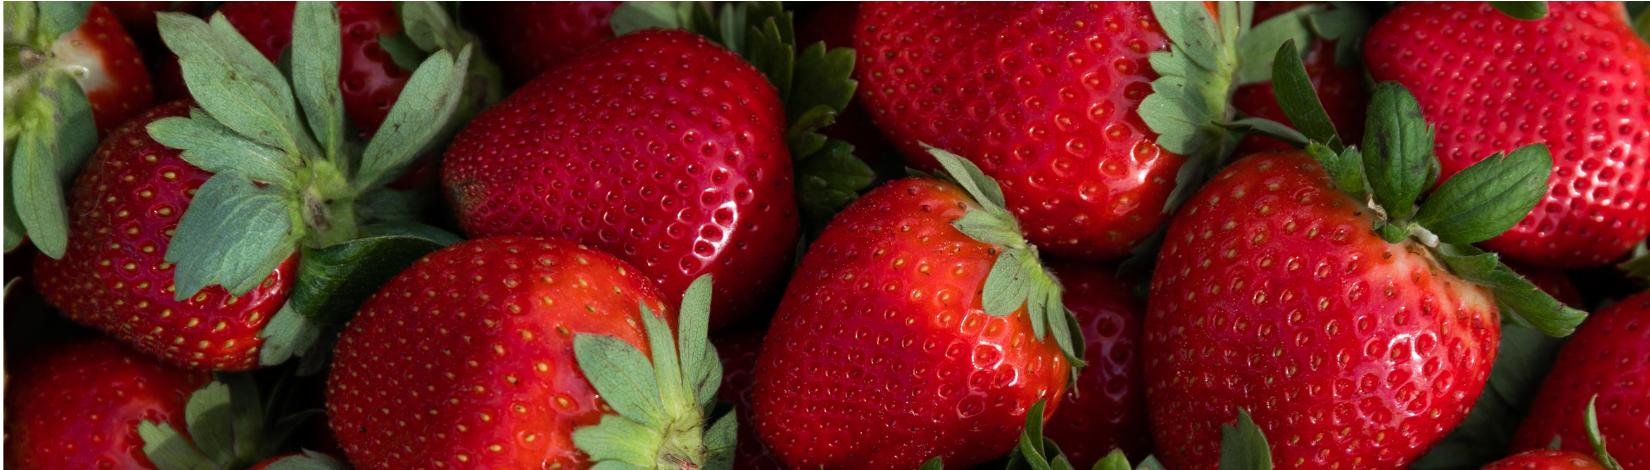 Strawberries 1650 x 470